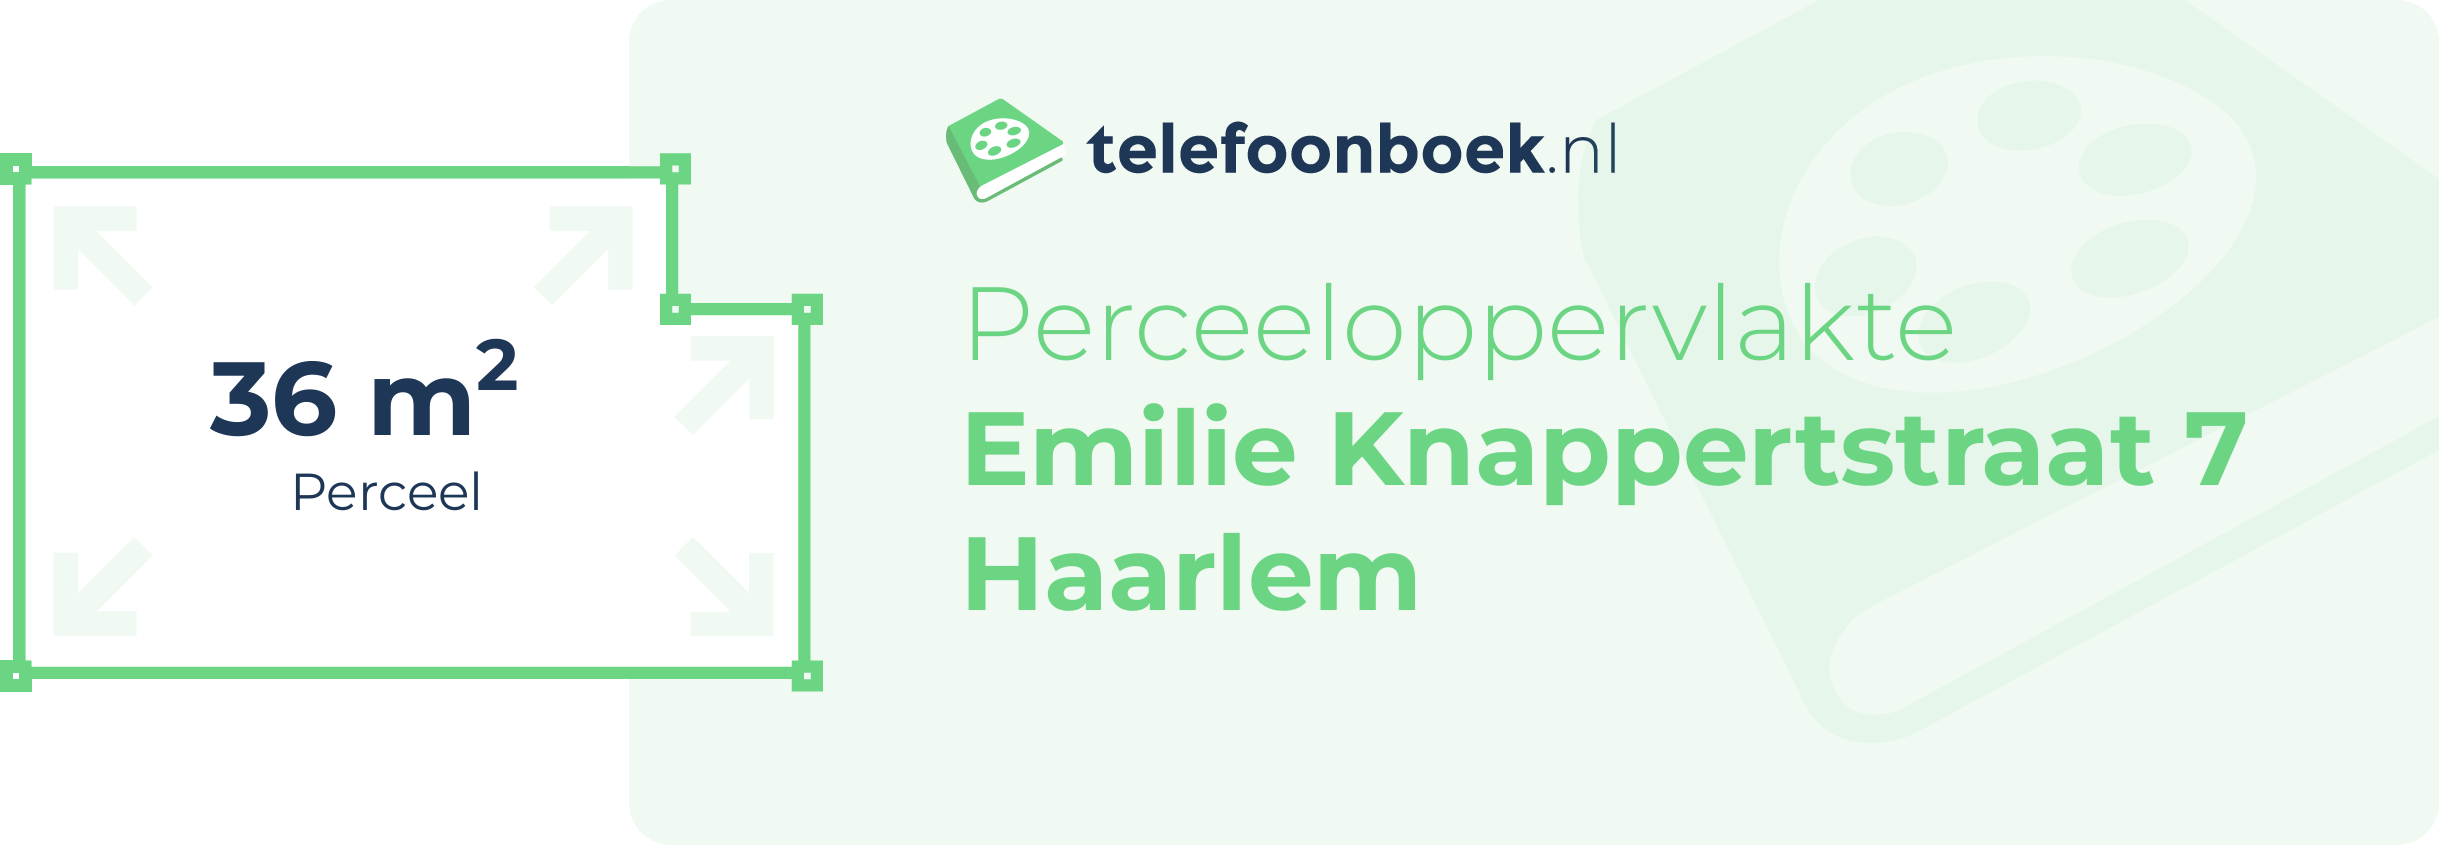 Perceeloppervlakte Emilie Knappertstraat 7 Haarlem